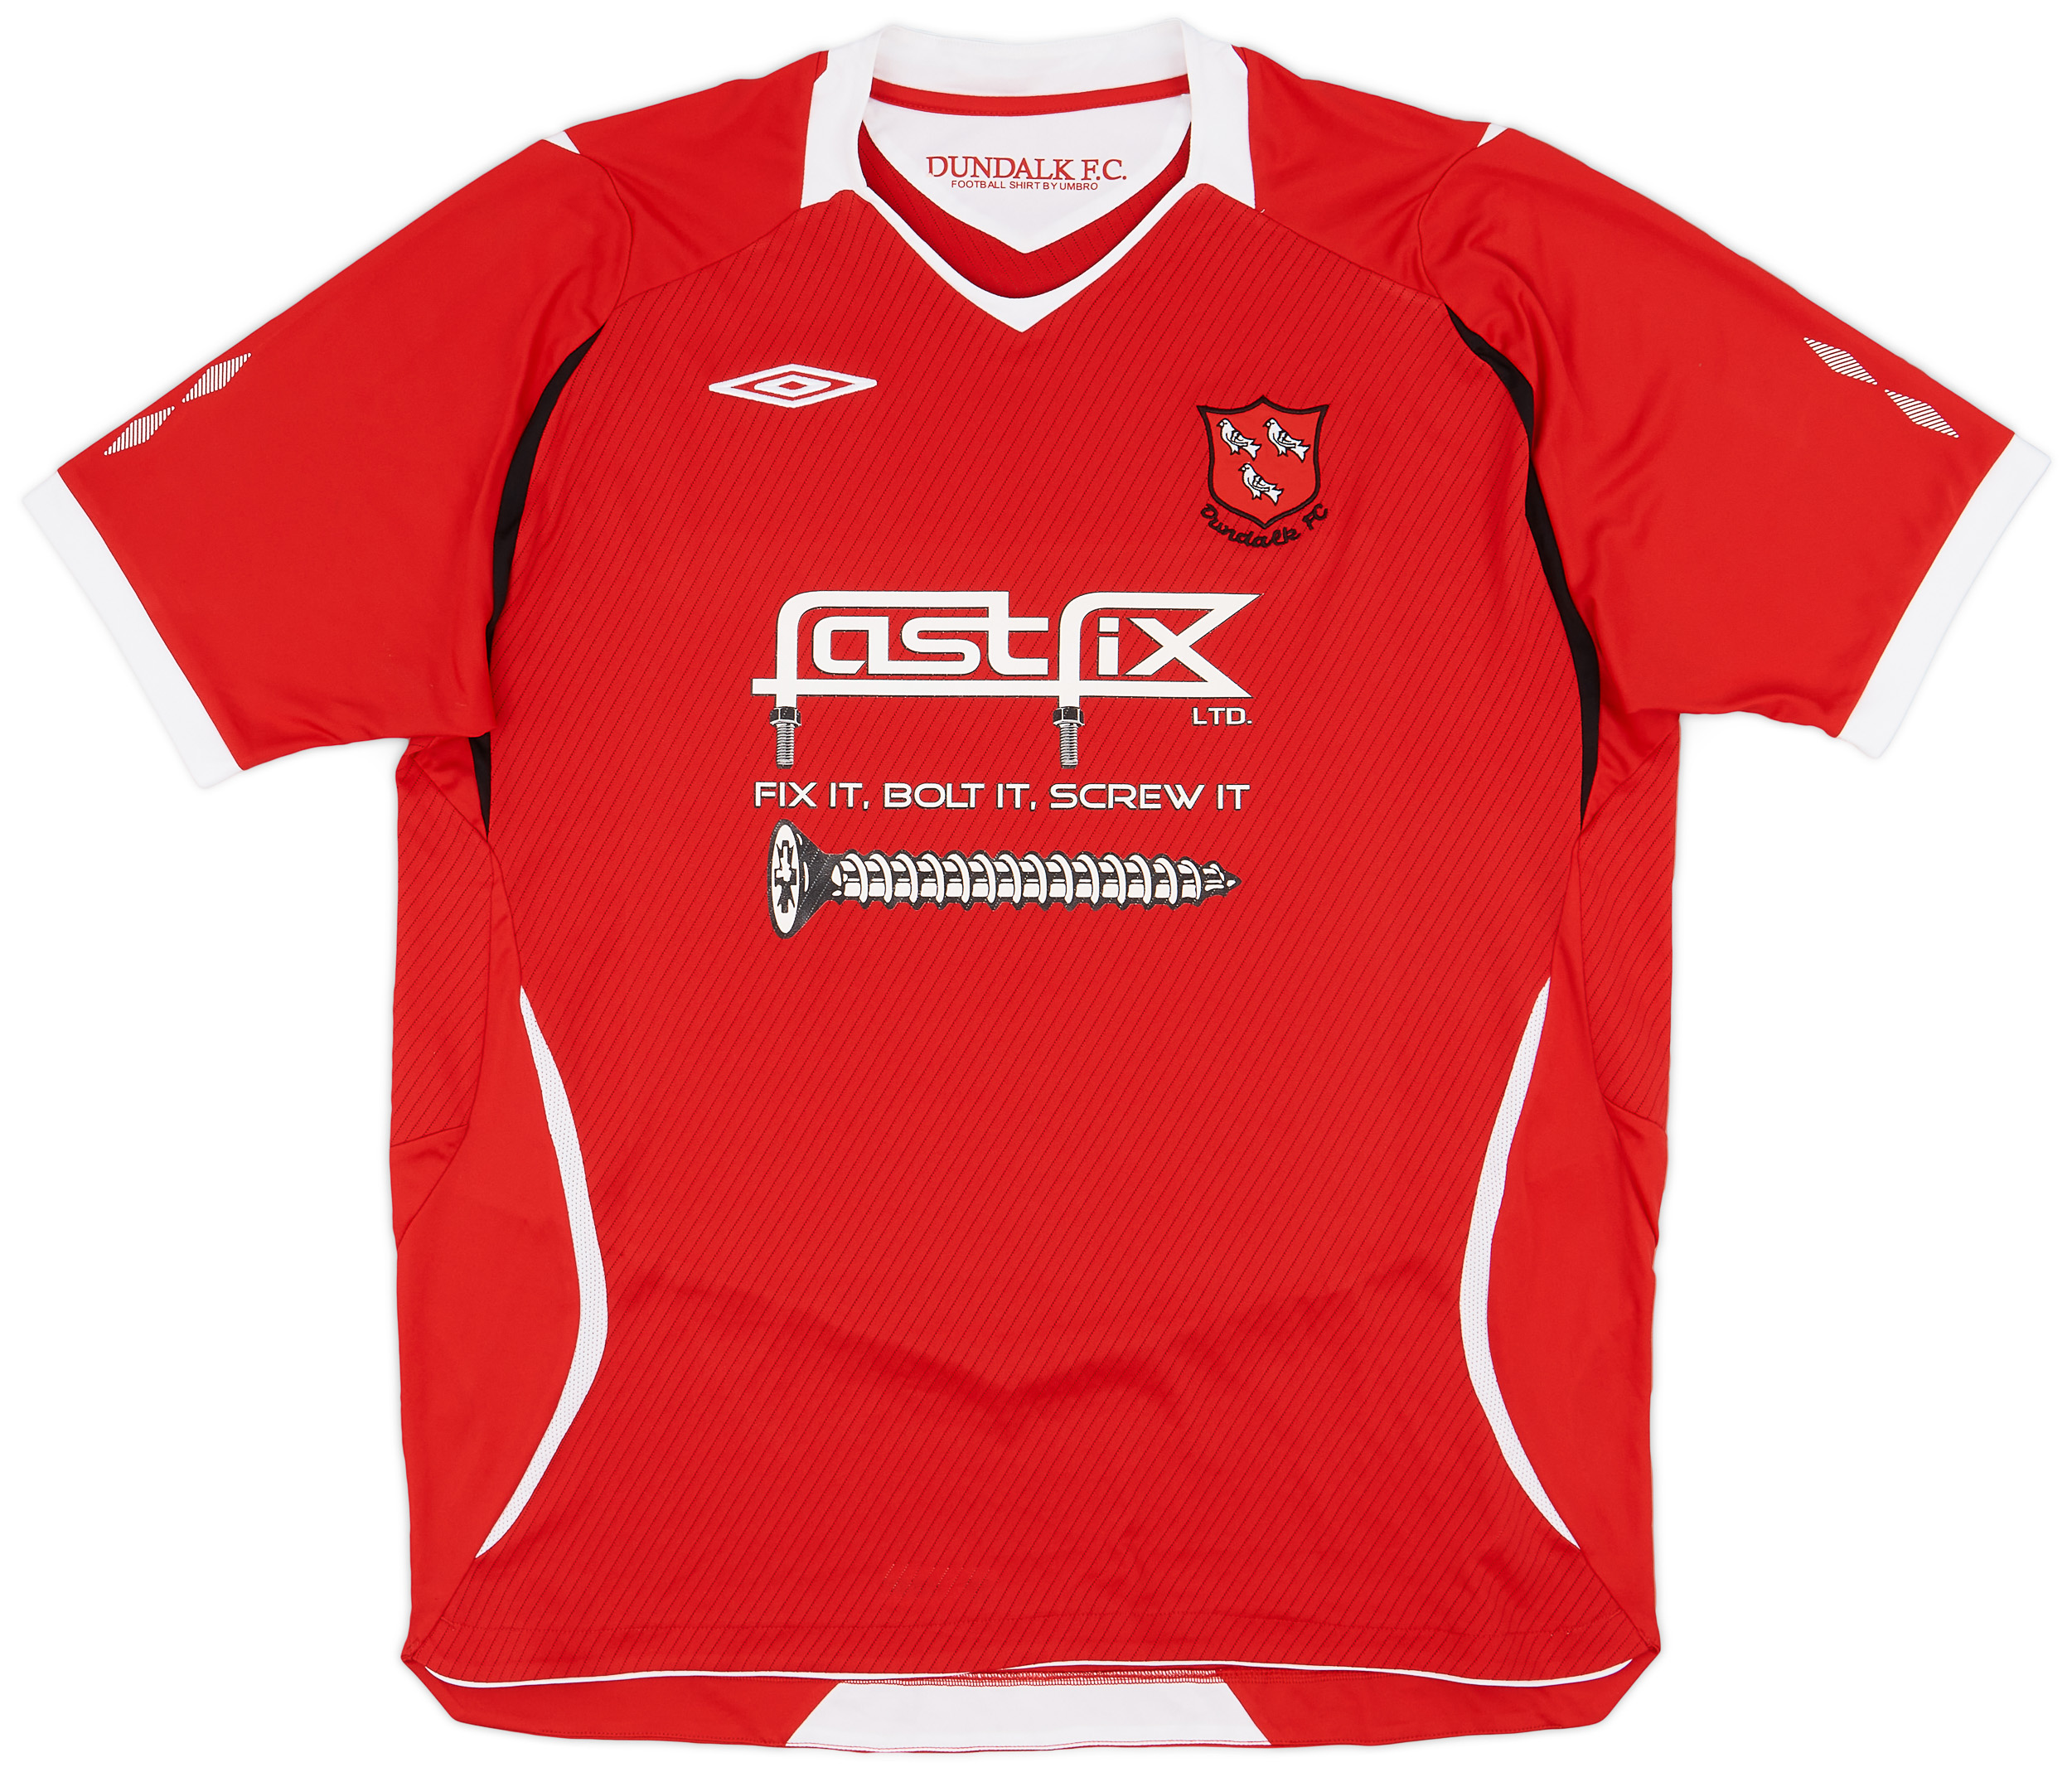 2010-11 Dundalk FC Away Shirt - 9/10 - ()